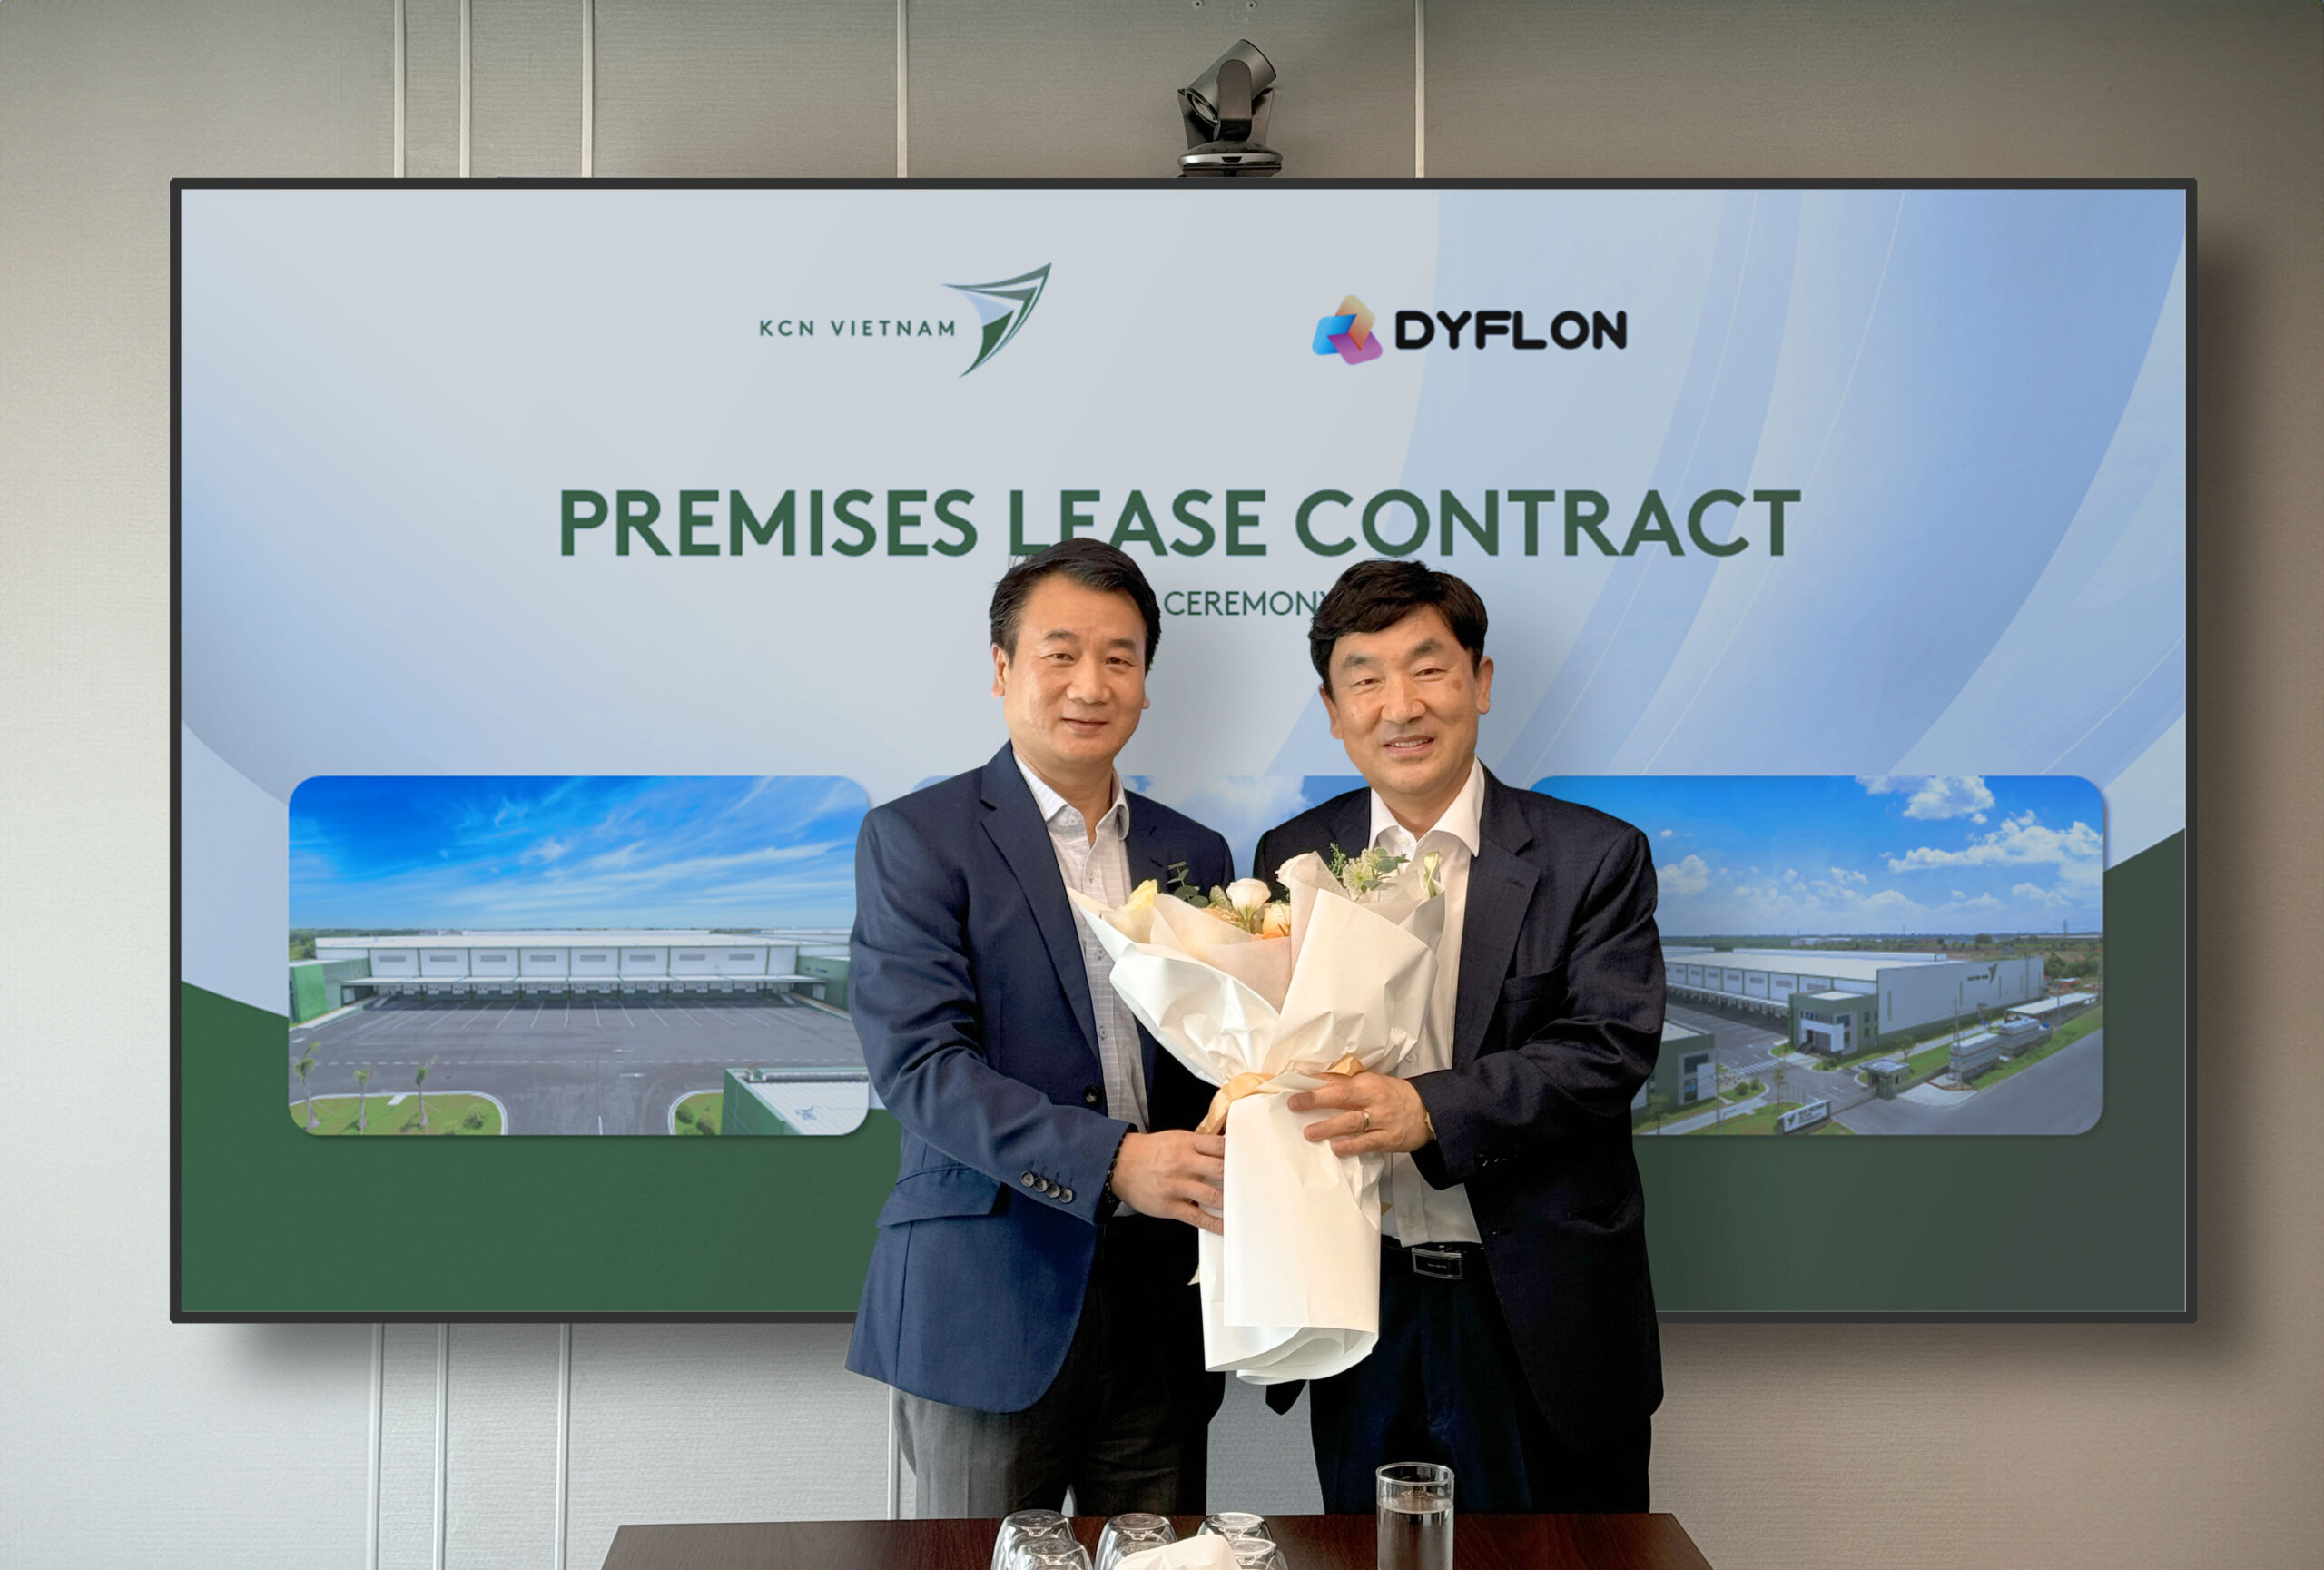 WELCOME DYFLON – KCN VIETNAM’S FIRST KOREAN TENANT IN HO NAI, DONG NAI!